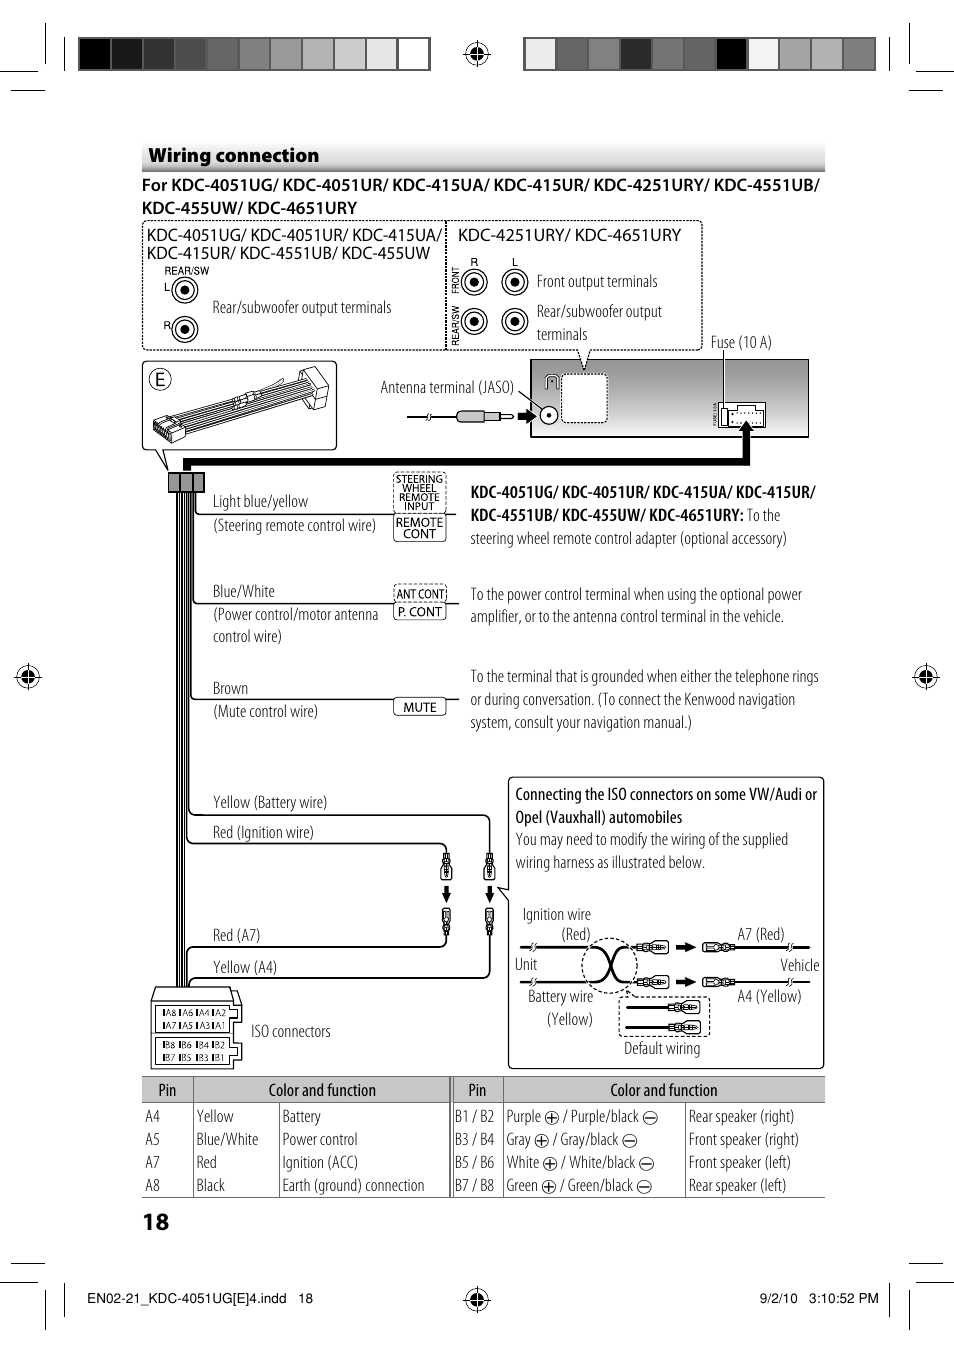 Kenwood KDC-4551UB User Manual | Page 18 / 21 | Also for: KDC-4051UG, KDC-4051UR,  KDC-455UW, KDC-415UR